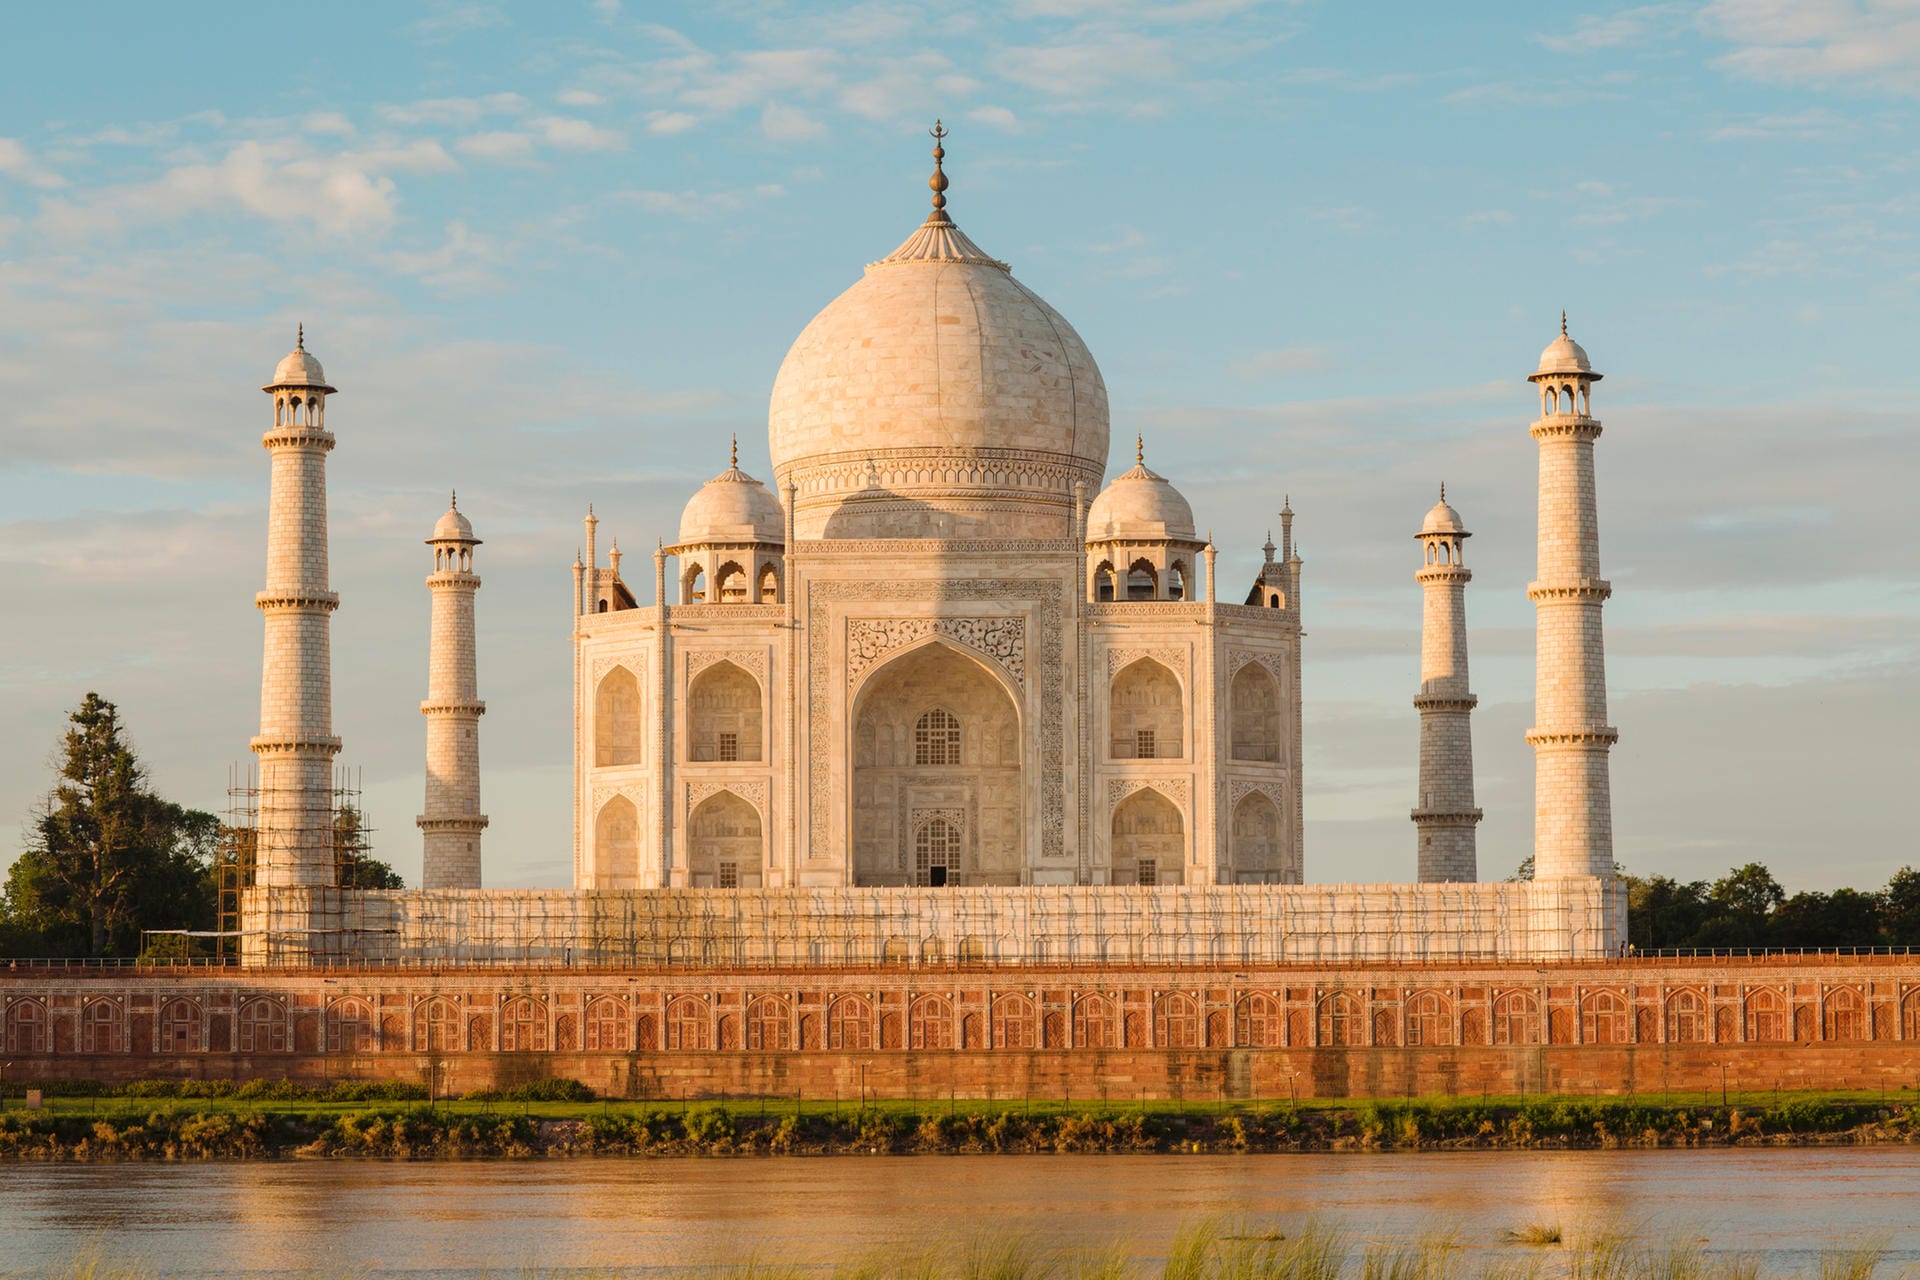 Taj Mahal: Um die Touristenströme unter Kontrolle zu bringen, wurden die Eintrittspreise des Taj Mahal erhöht und die Dauer des Besuches auf drei Stunden begrenzt.